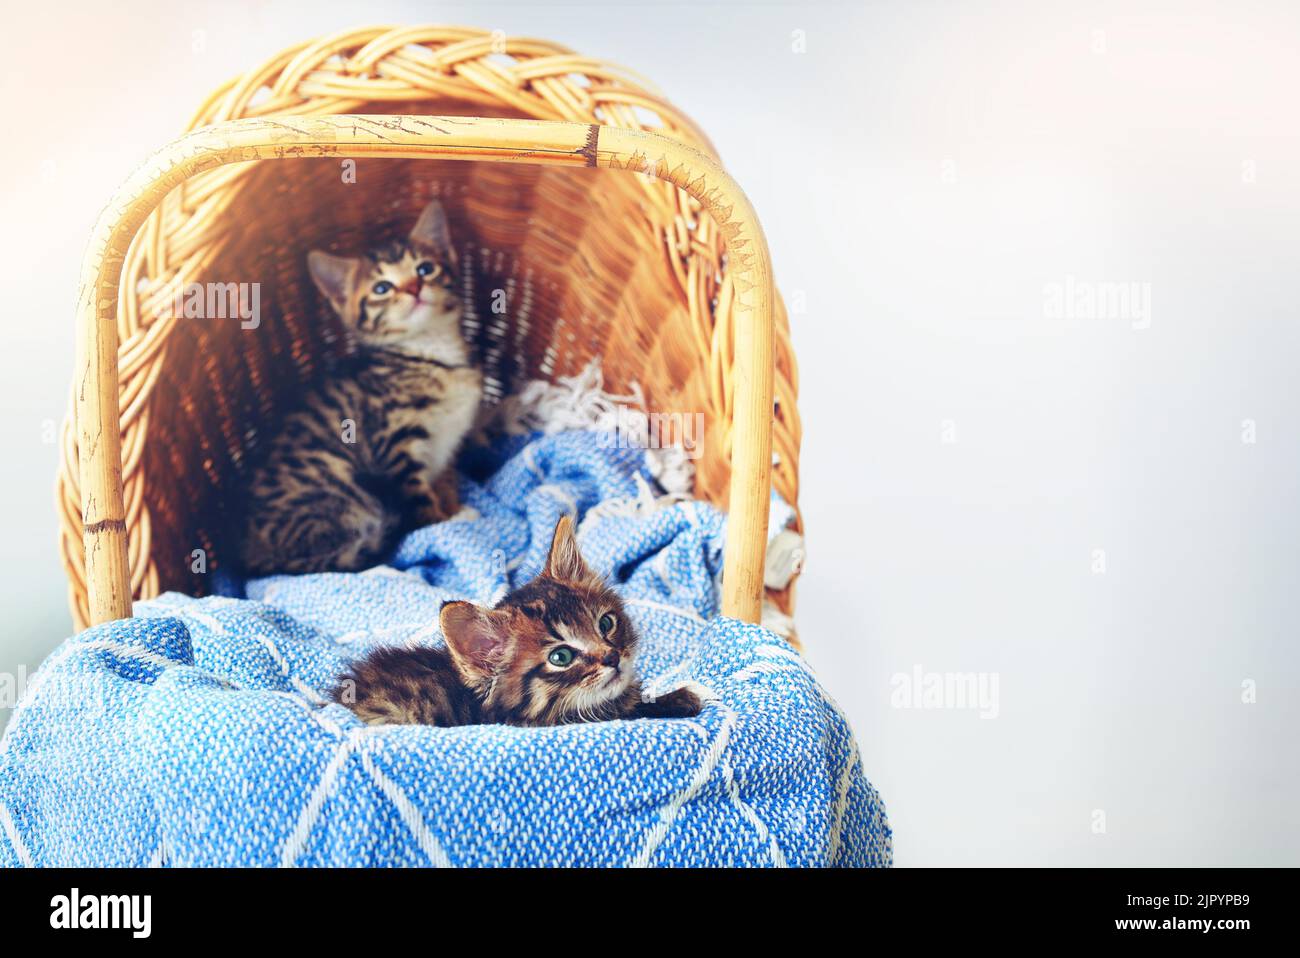 Chi può resistere a tutto questo taglio. Studio shot di un adorabile gattino da tabby seduto su una morbida coperta in un cesto. Foto Stock